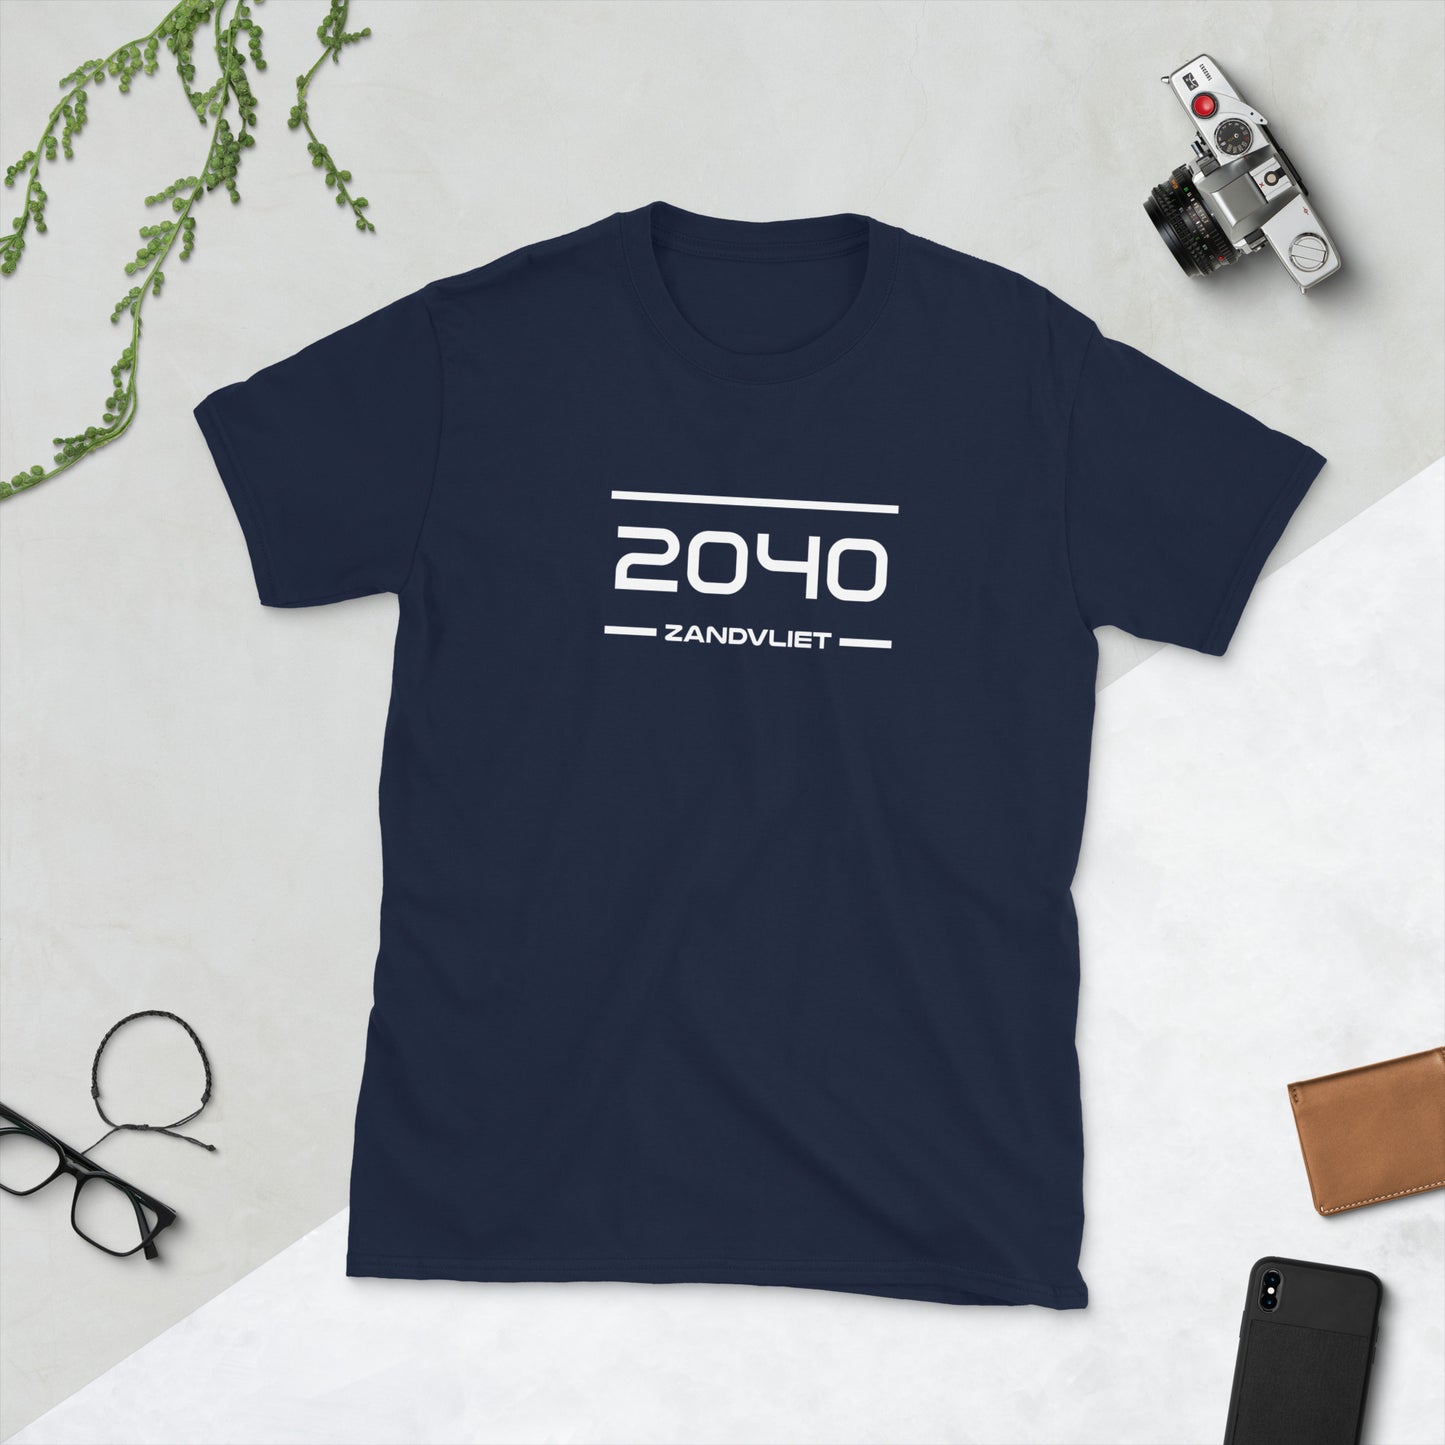 Tshirt - 2040 - Zandvliet